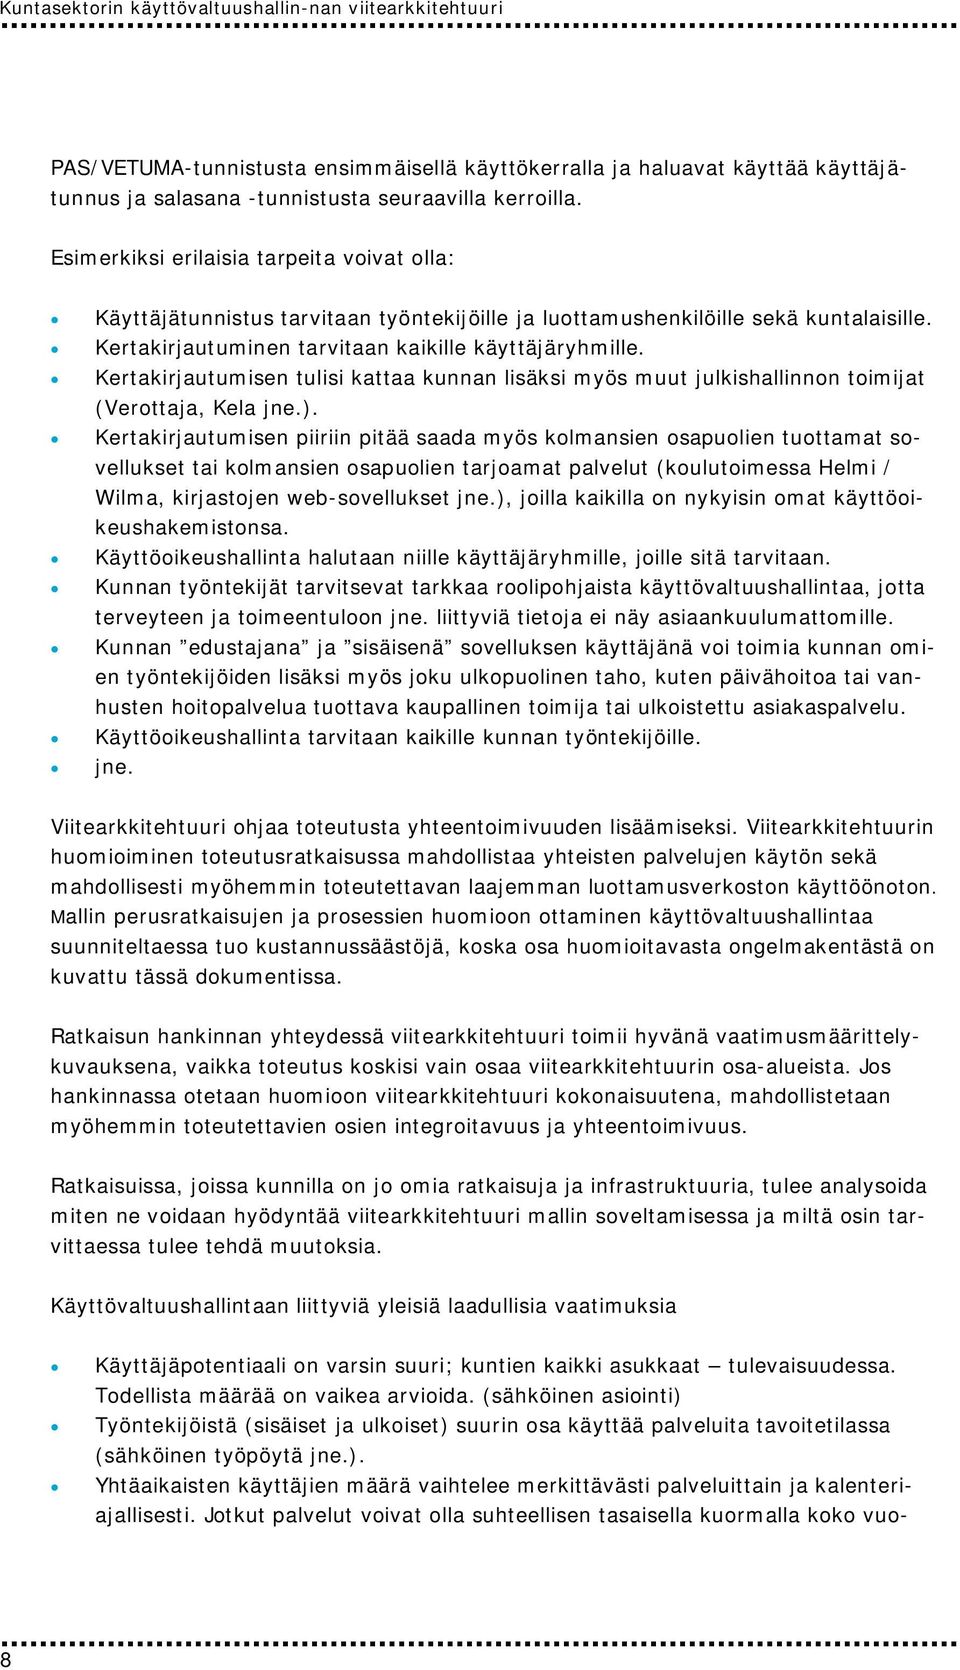 Kertakirjautumisen tulisi kattaa kunnan lisäksi myös muut julkishallinnon toimijat (Verottaja, Kela jne.).